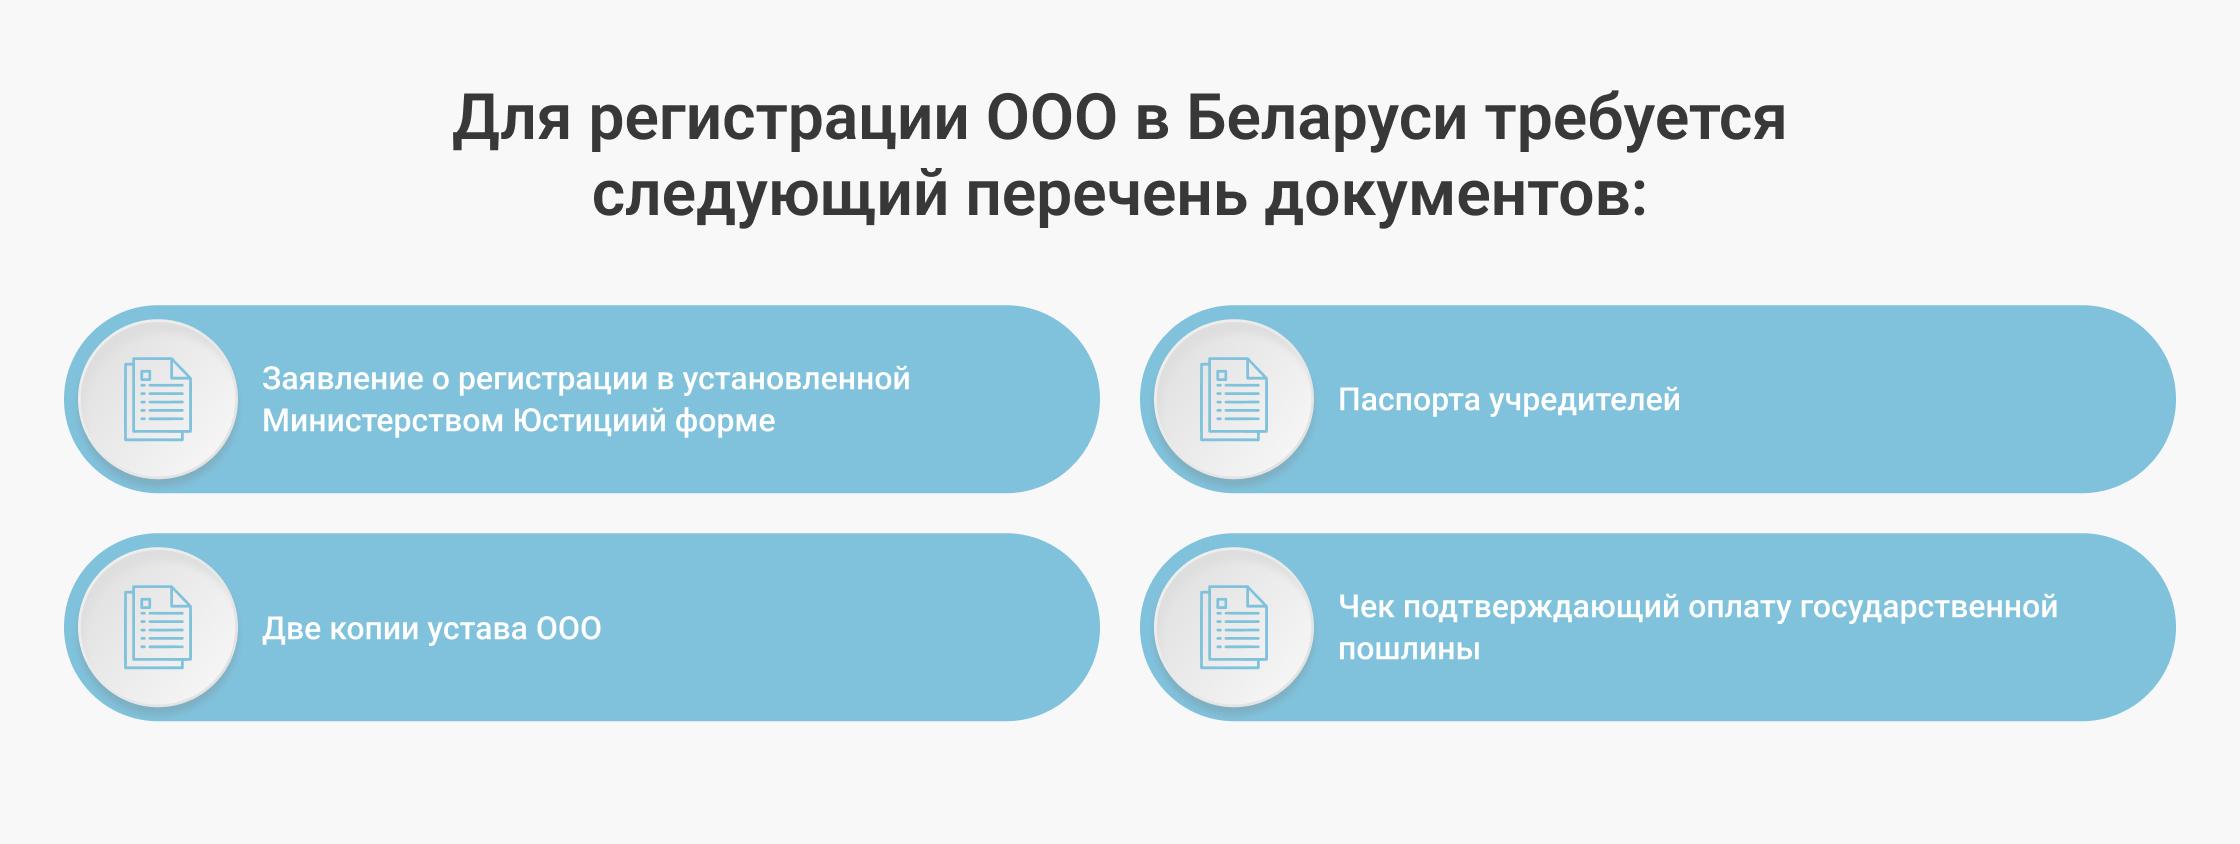 Для регистрации ООО в Беларуси требуется следующий перечень документов